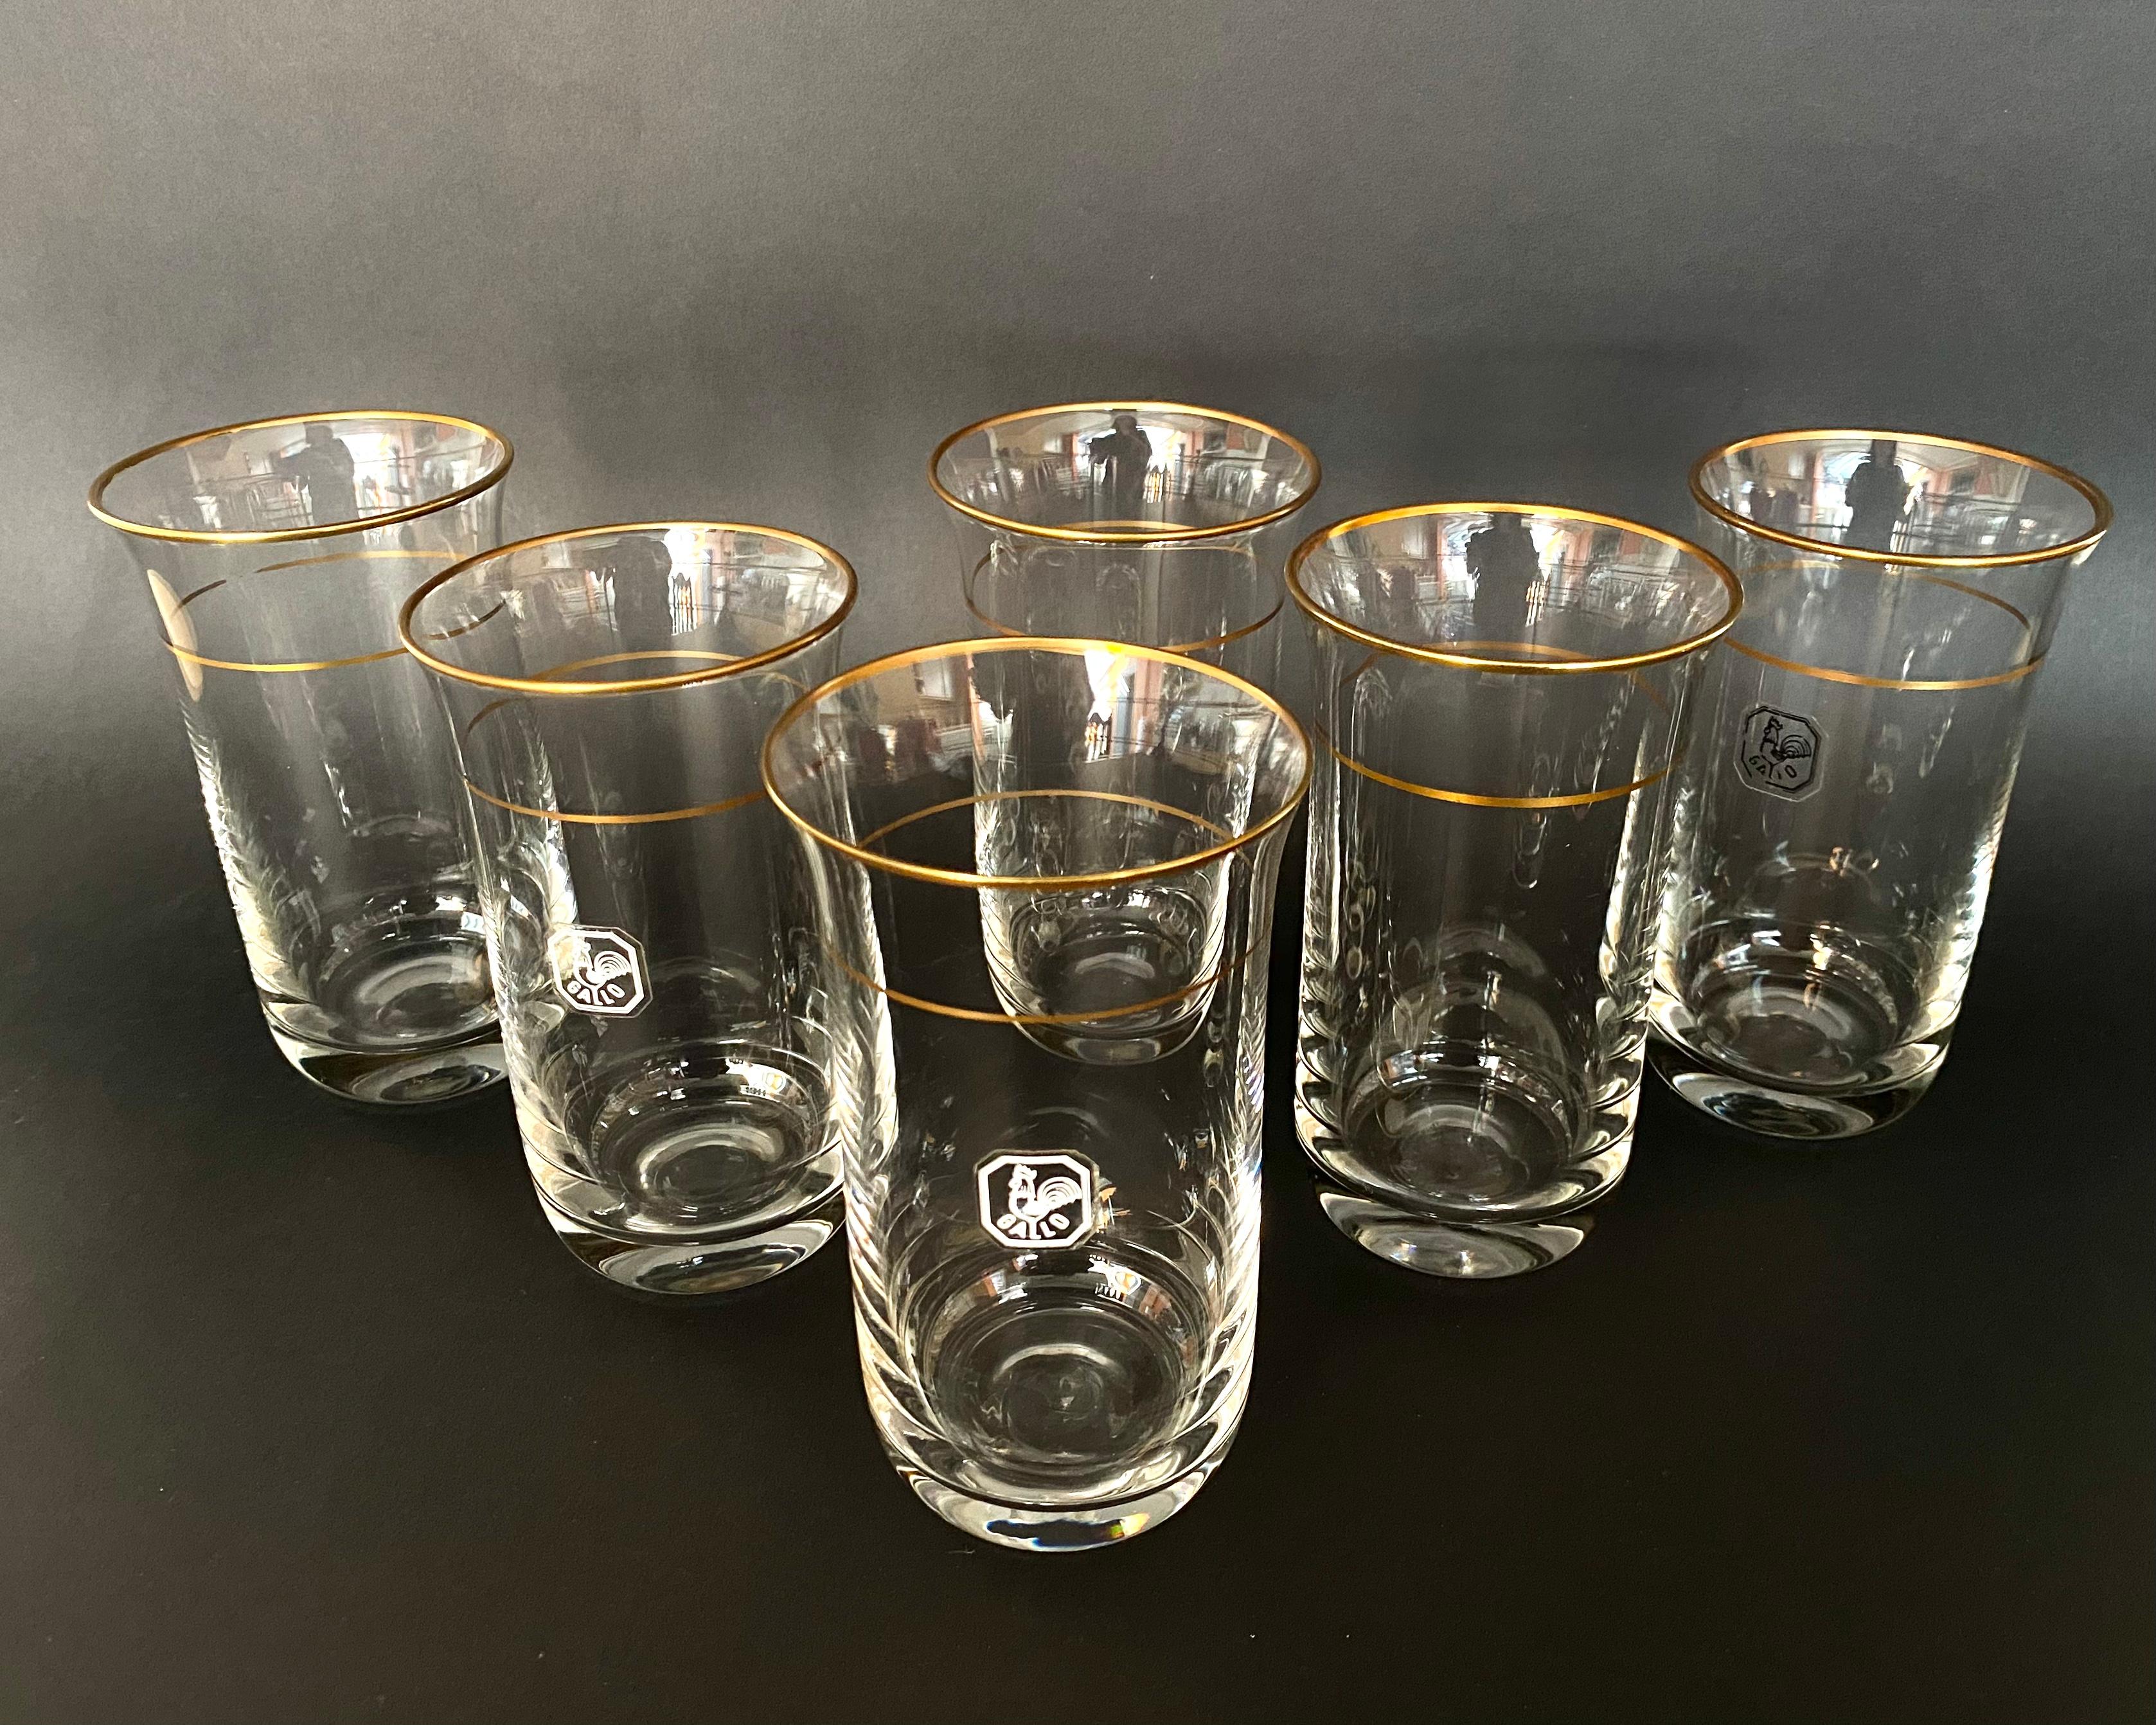 Vintage Kristallwassergläser GALLO, Deutschland, 1970er Jahre

Vintage Kristallwassergläser mit vergoldetem Rand, Set 6 Stück, hergestellt in Deutschland vom Hersteller GALLO, ca. 1970er Jahre. 

Gallo-Gläser sind berühmt für ihre unübertroffene